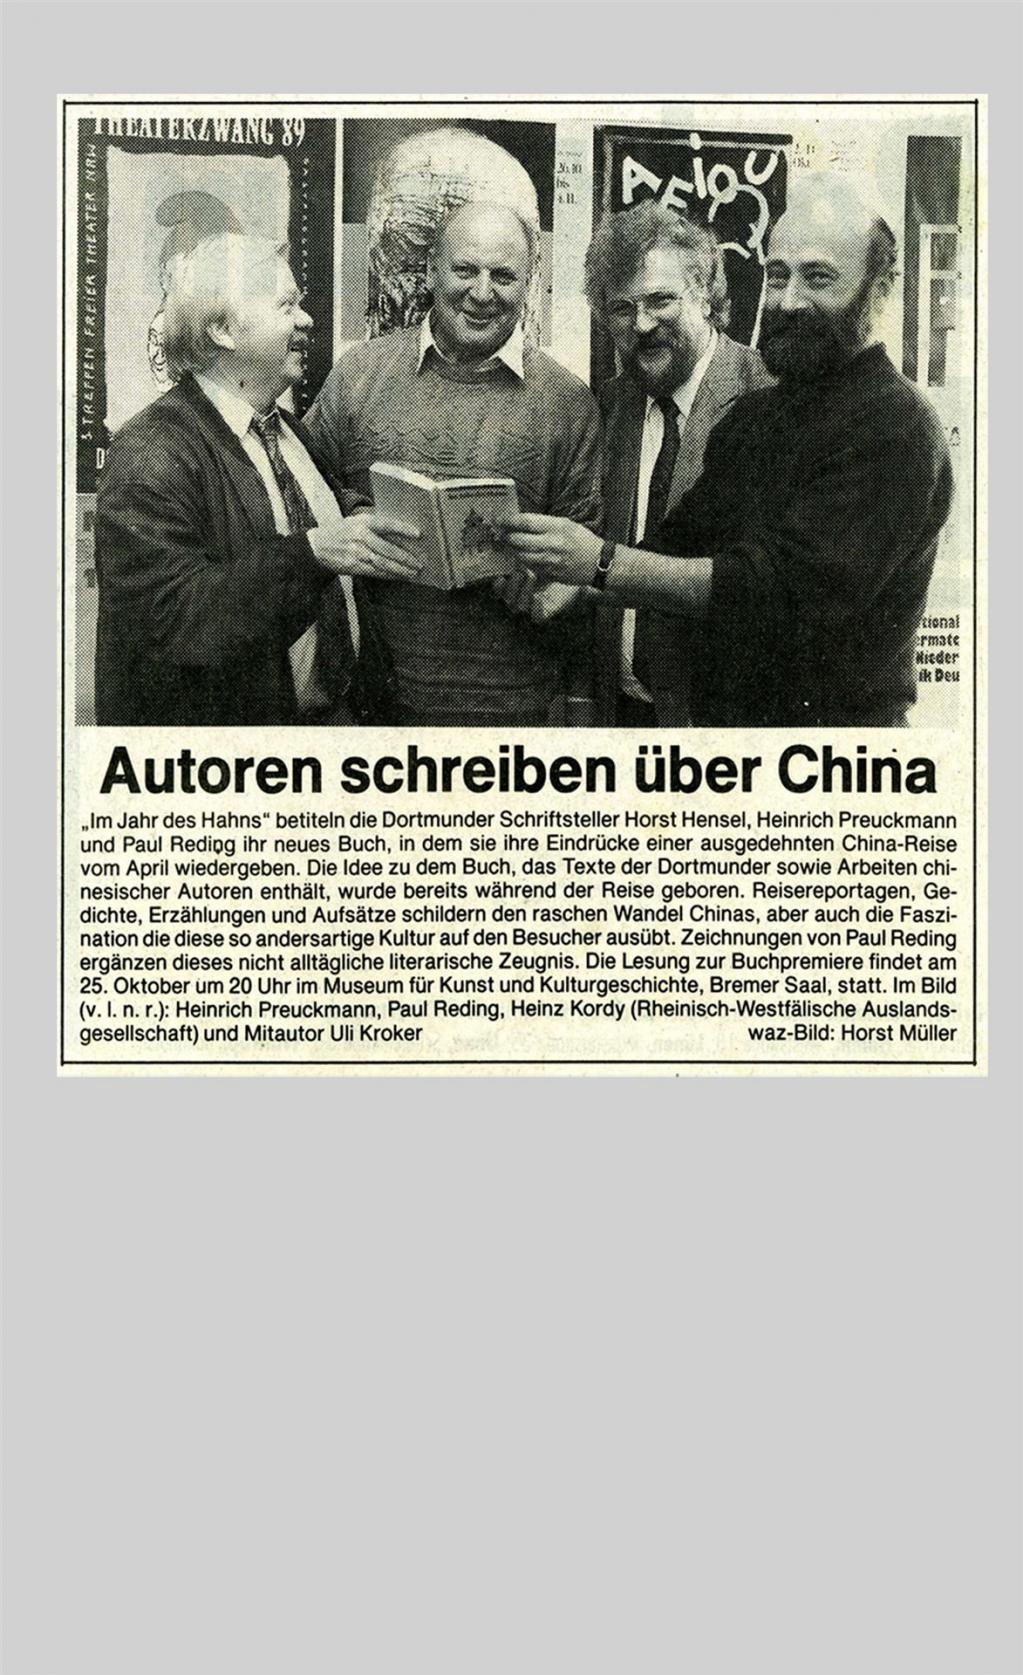 Westdeutsche Allgemeine, 23.10.1993